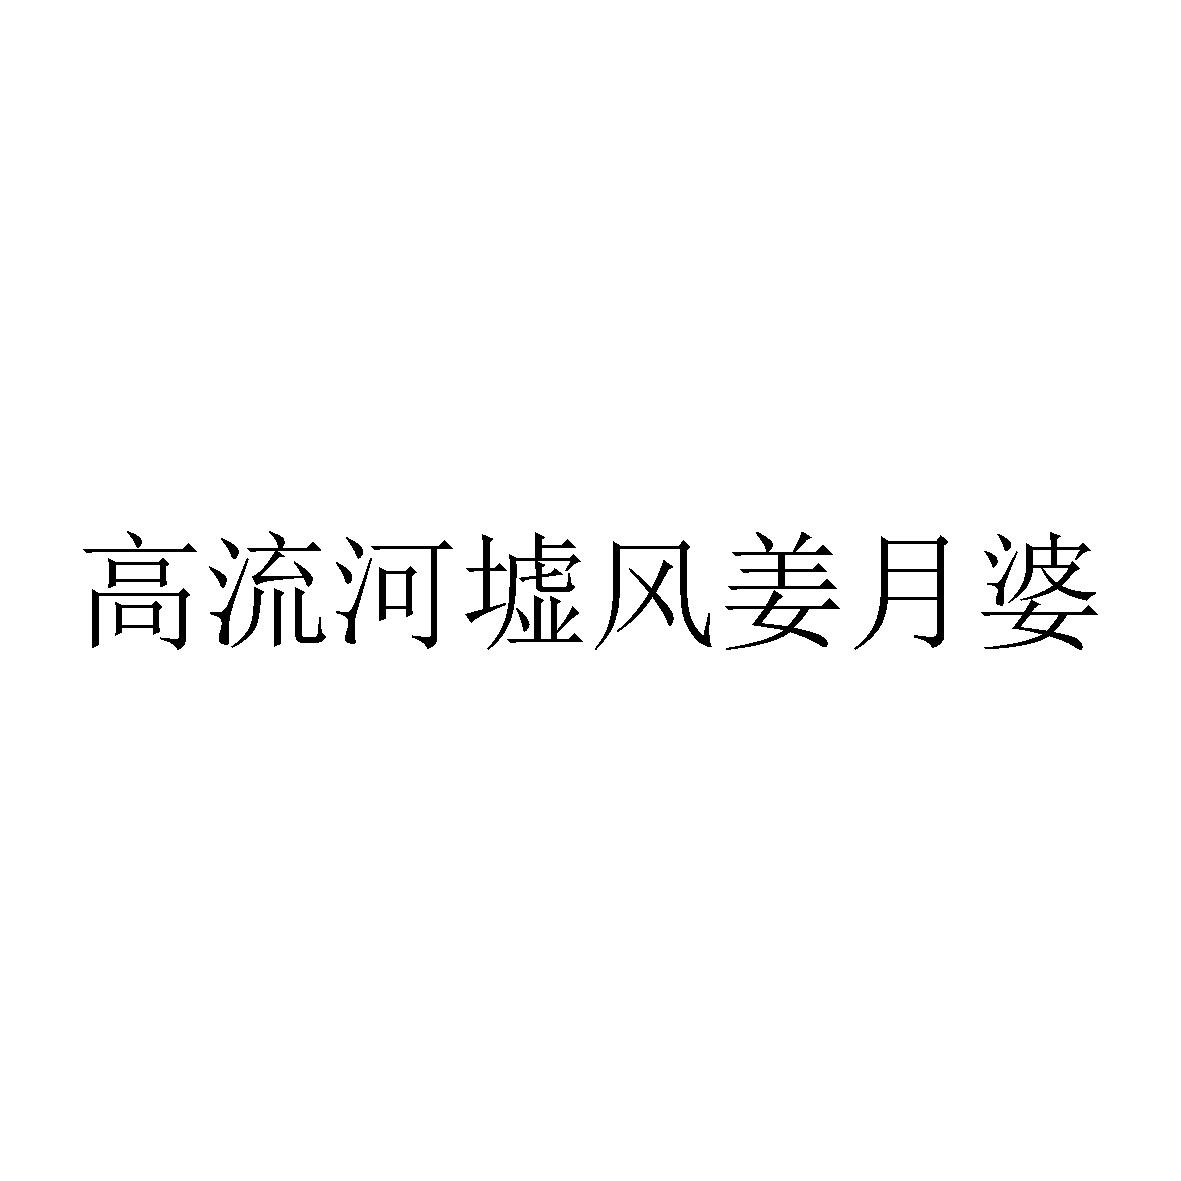 高流河墟风姜月婆logo